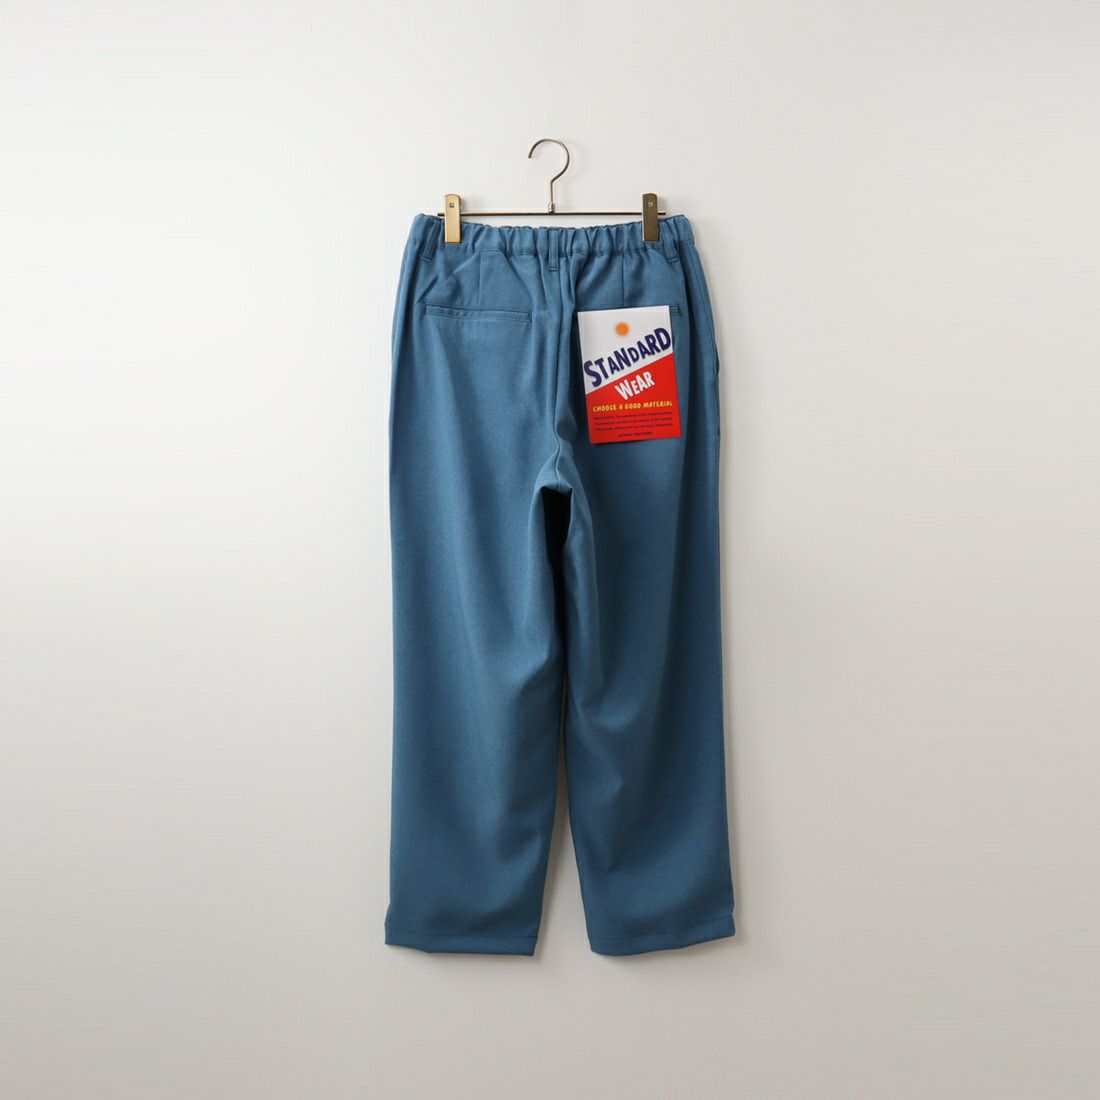 Jeans Factory Clothes [ジーンズファクトリークローズ] トロピカルストレッチソリッドパンツ [JFC-231-026] 05 BLUE